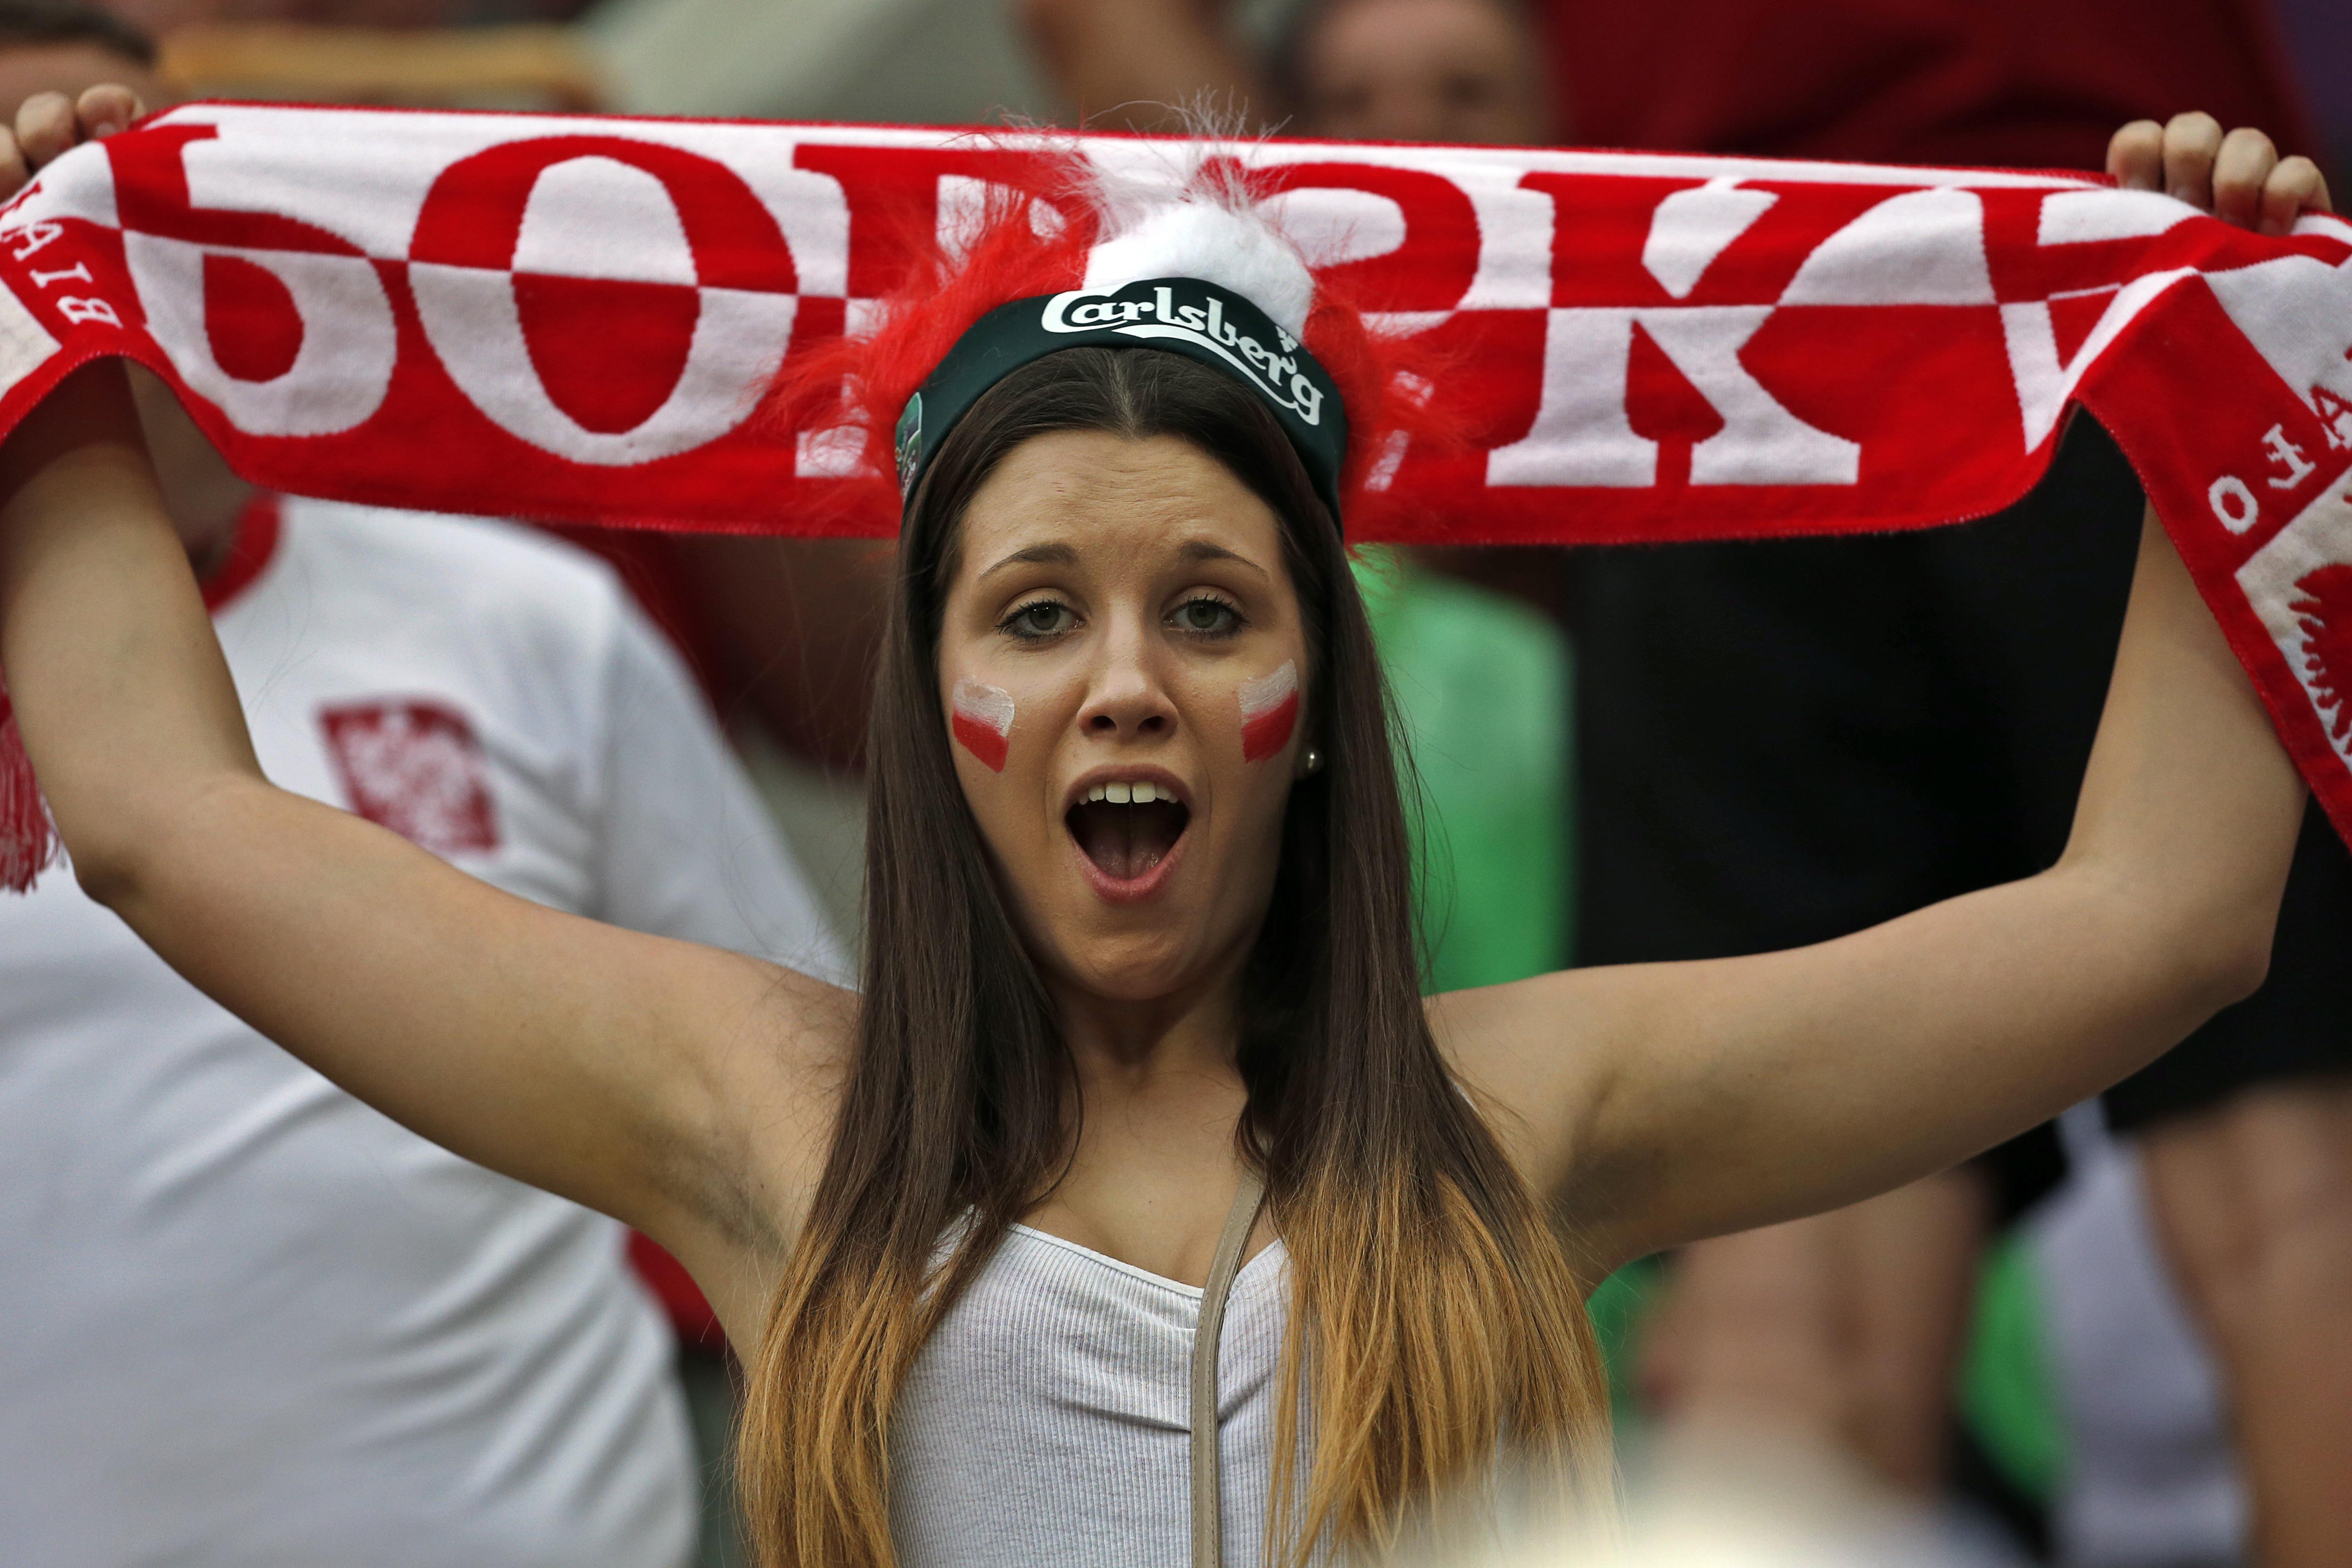 De polska fansen är taggade.